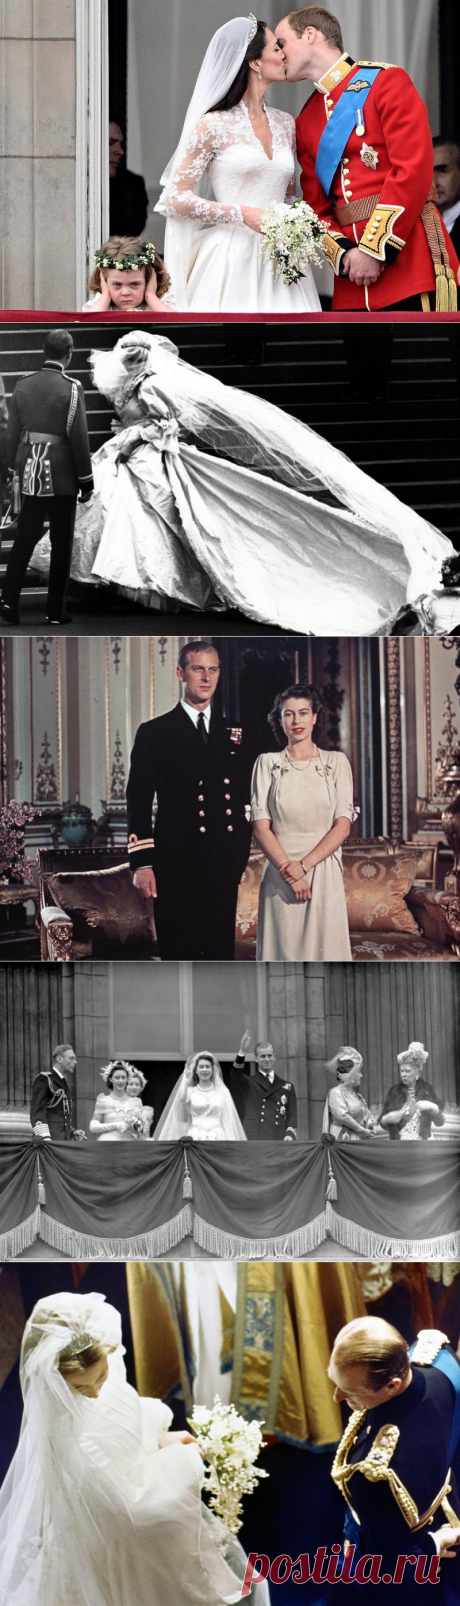 Самые яркие кадры британских королевских бракосочетаний • НОВОСТИ В ФОТОГРАФИЯХ